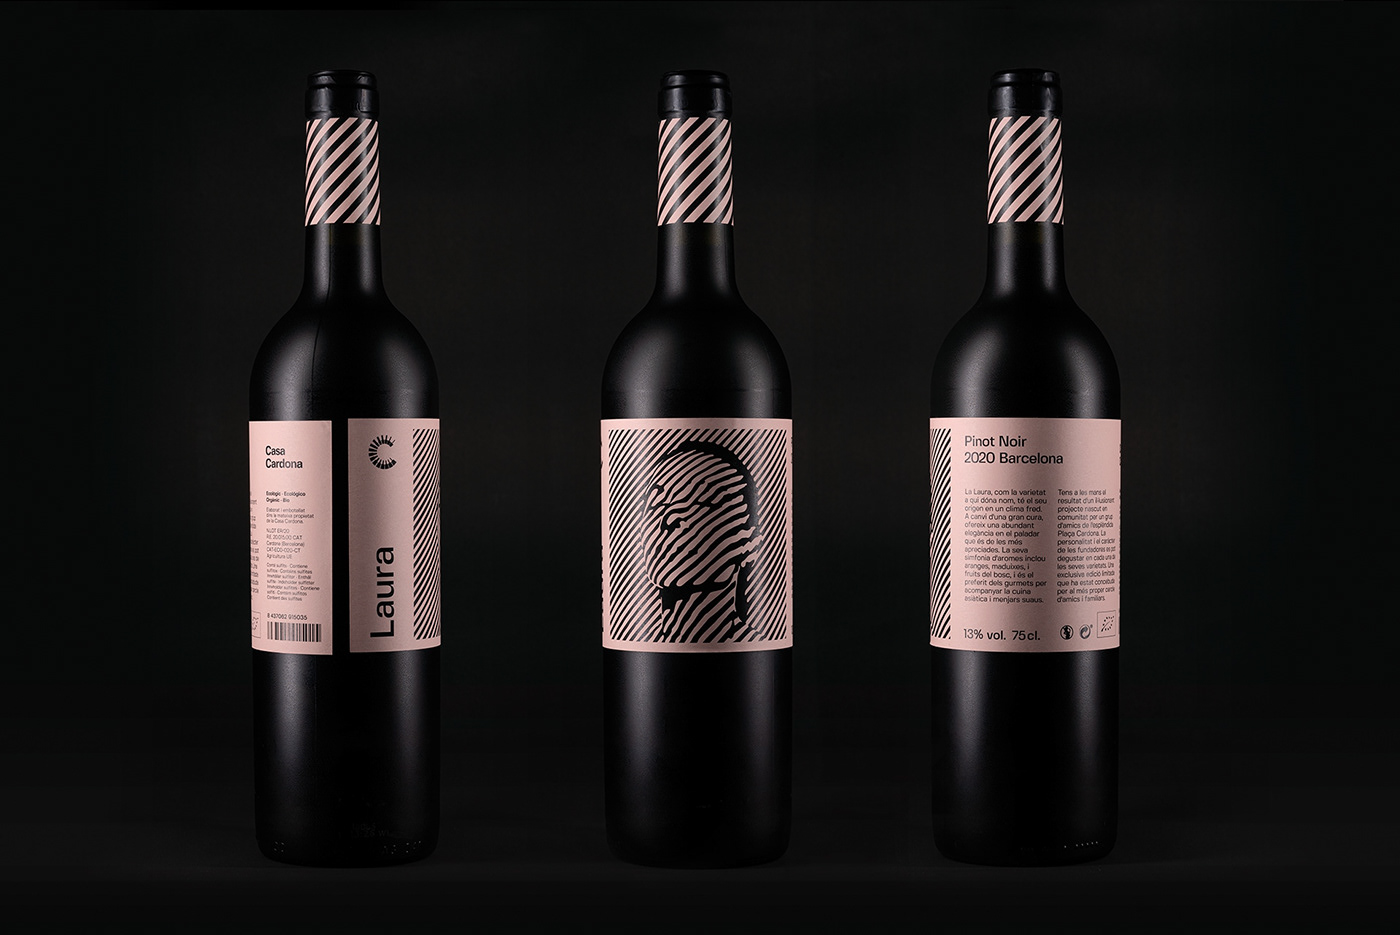 Packshot of "Laura" Pinot Noir wine bottle